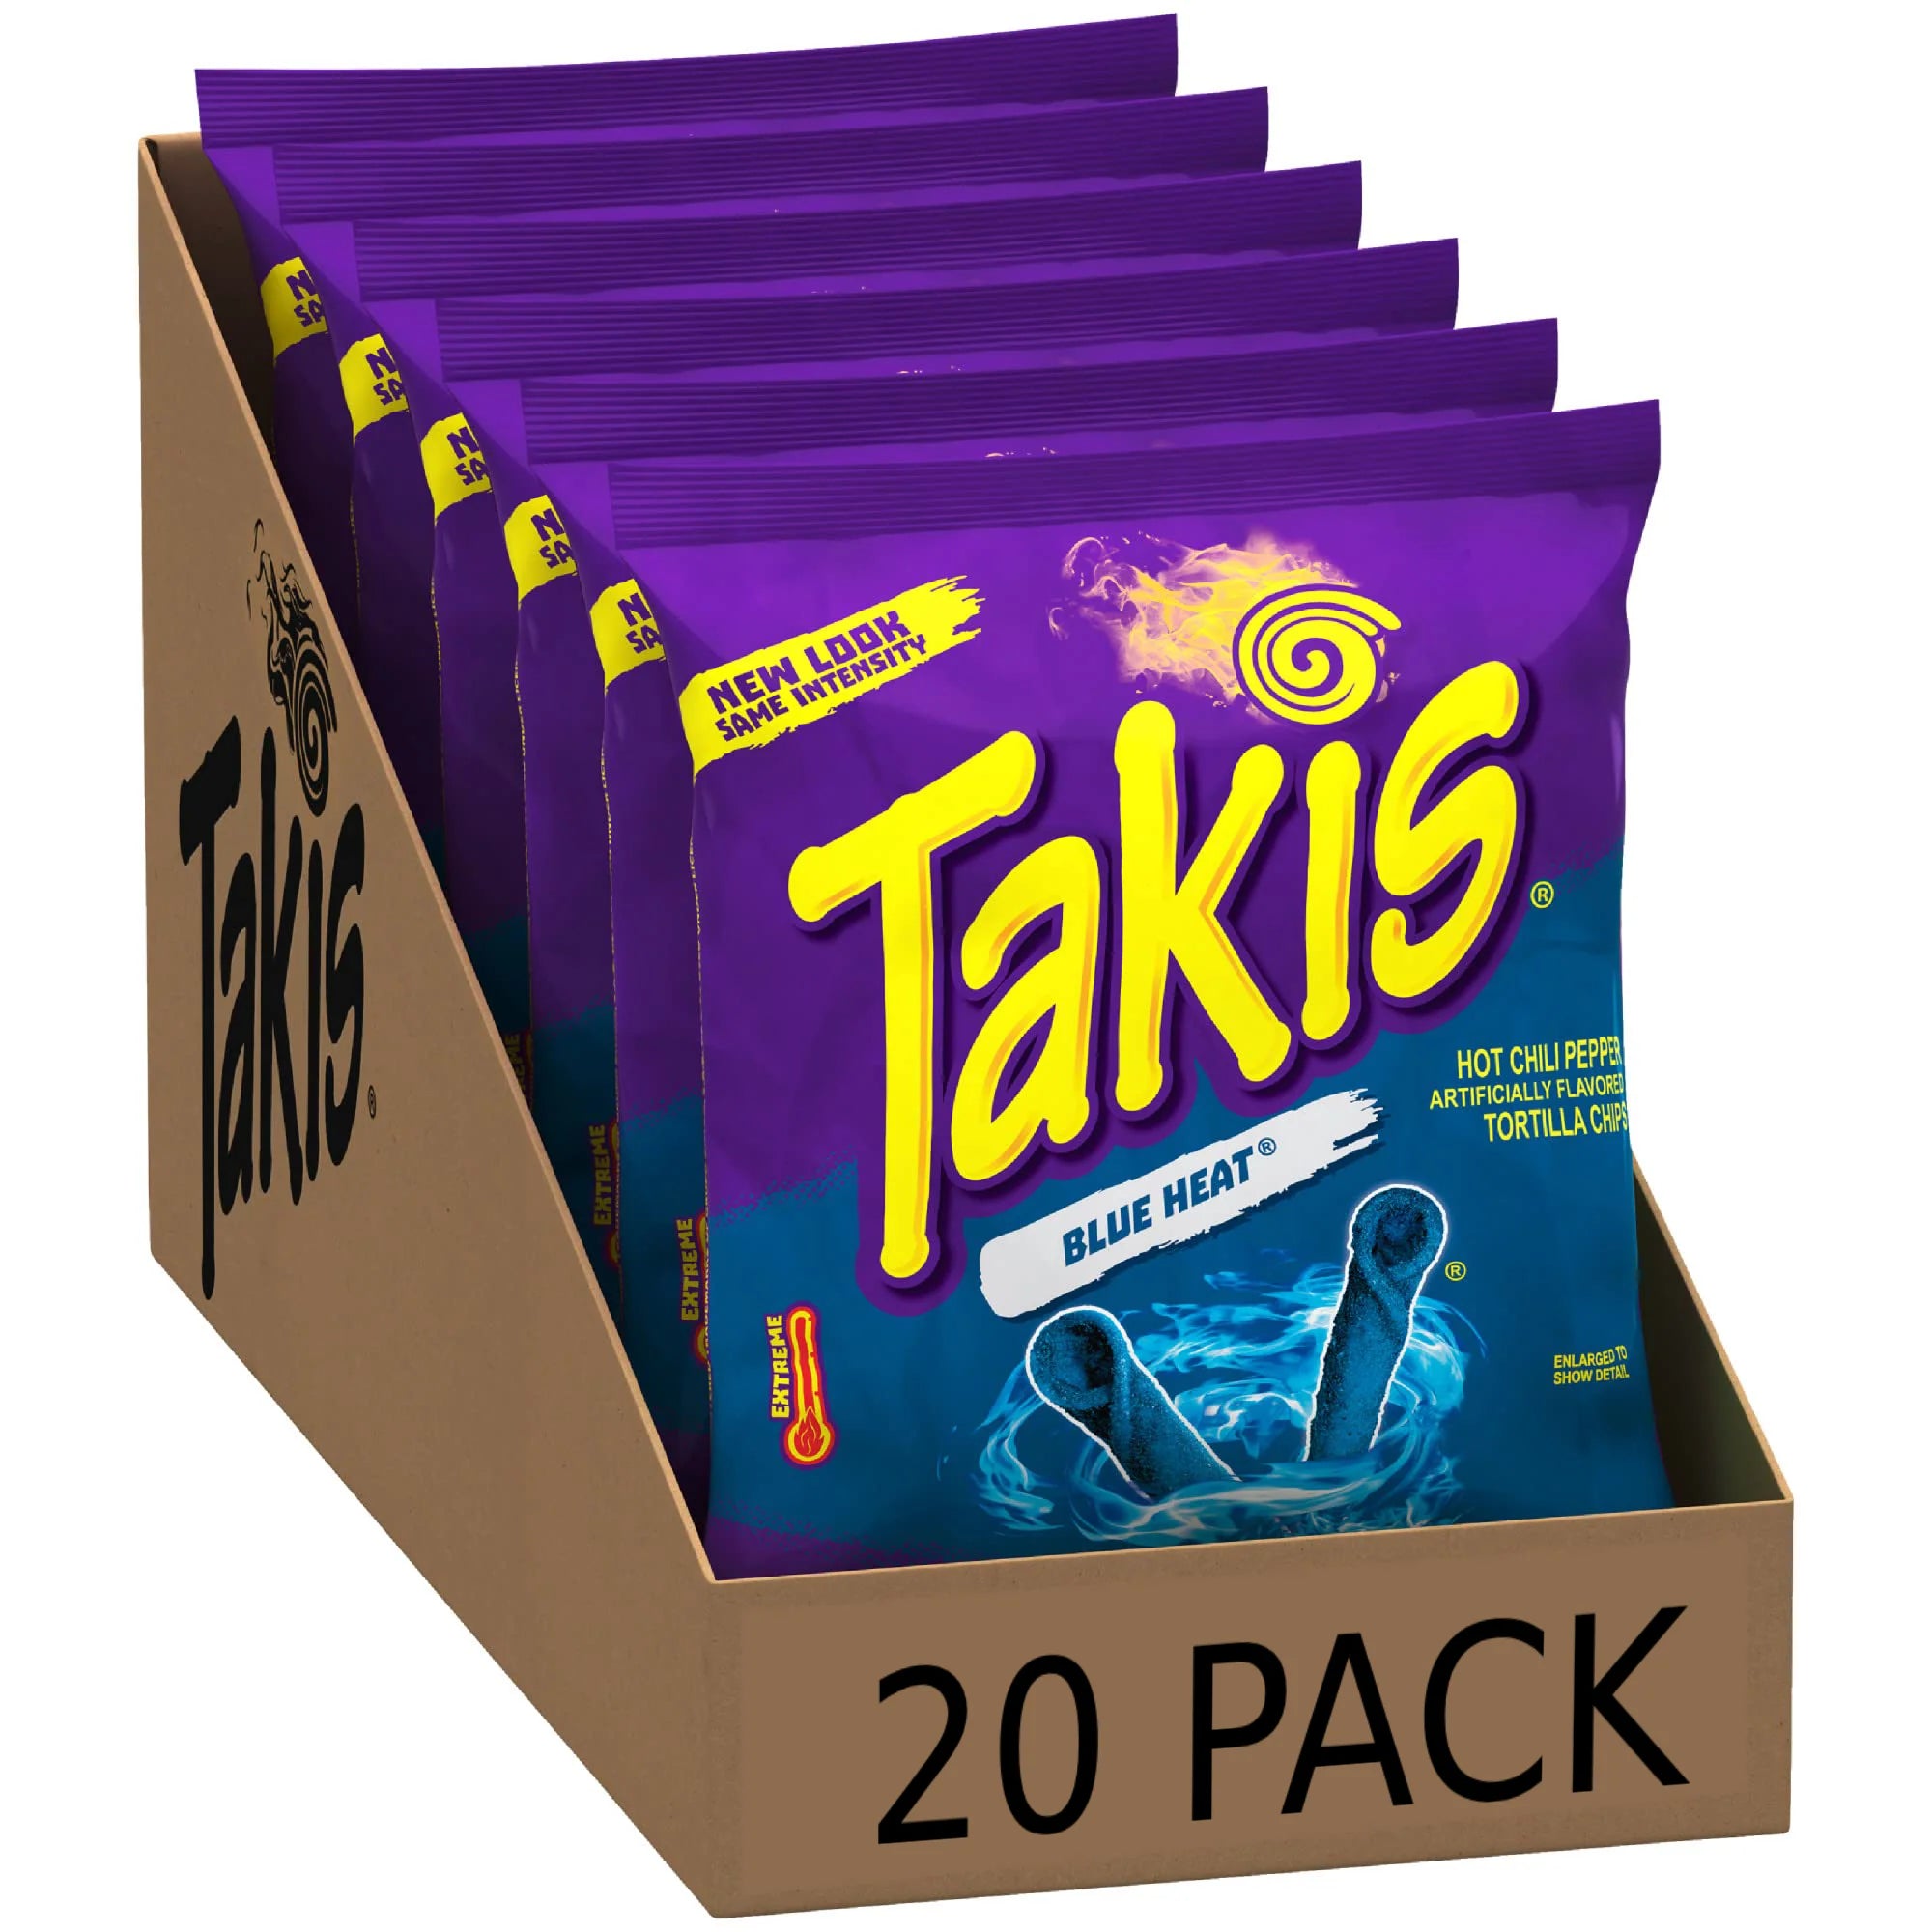 Takis Blue Heat Box of 20 (20 x 113.4g)